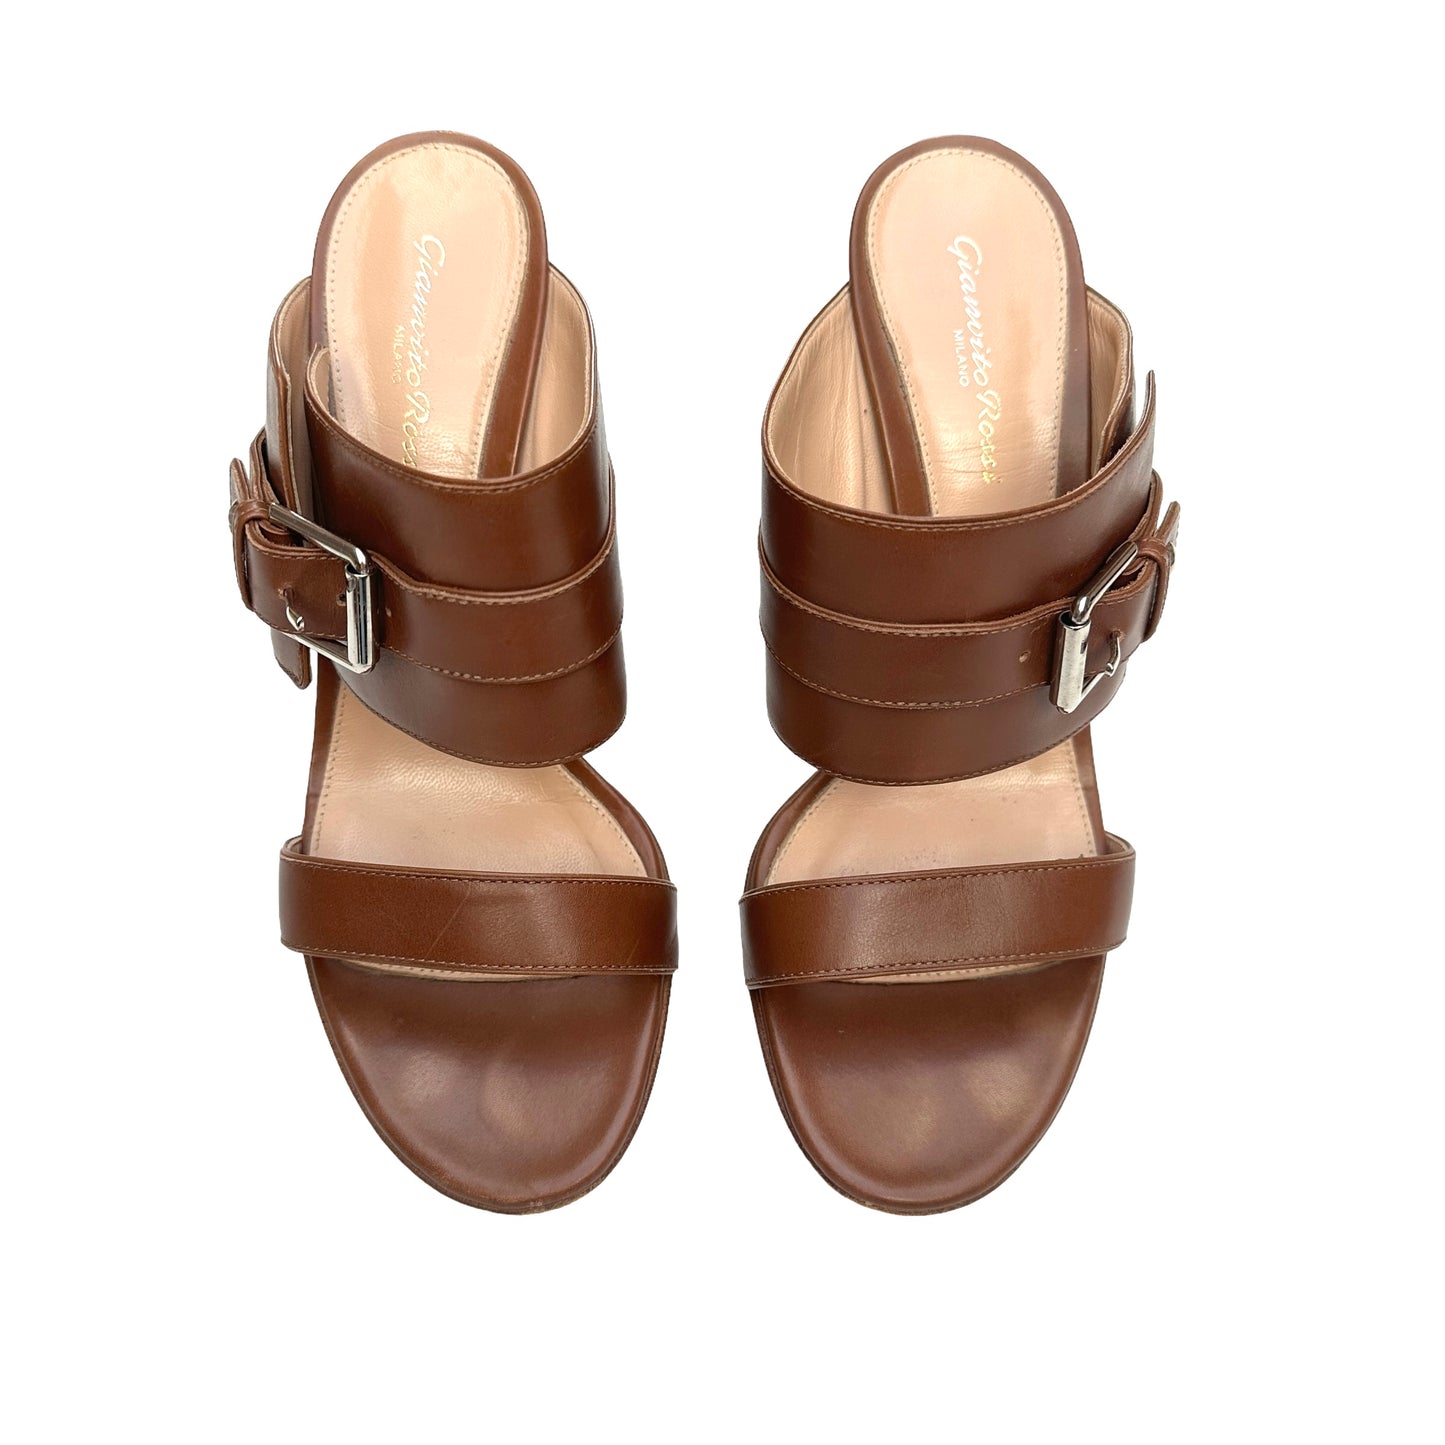 Brown Leather Heels - 9.5